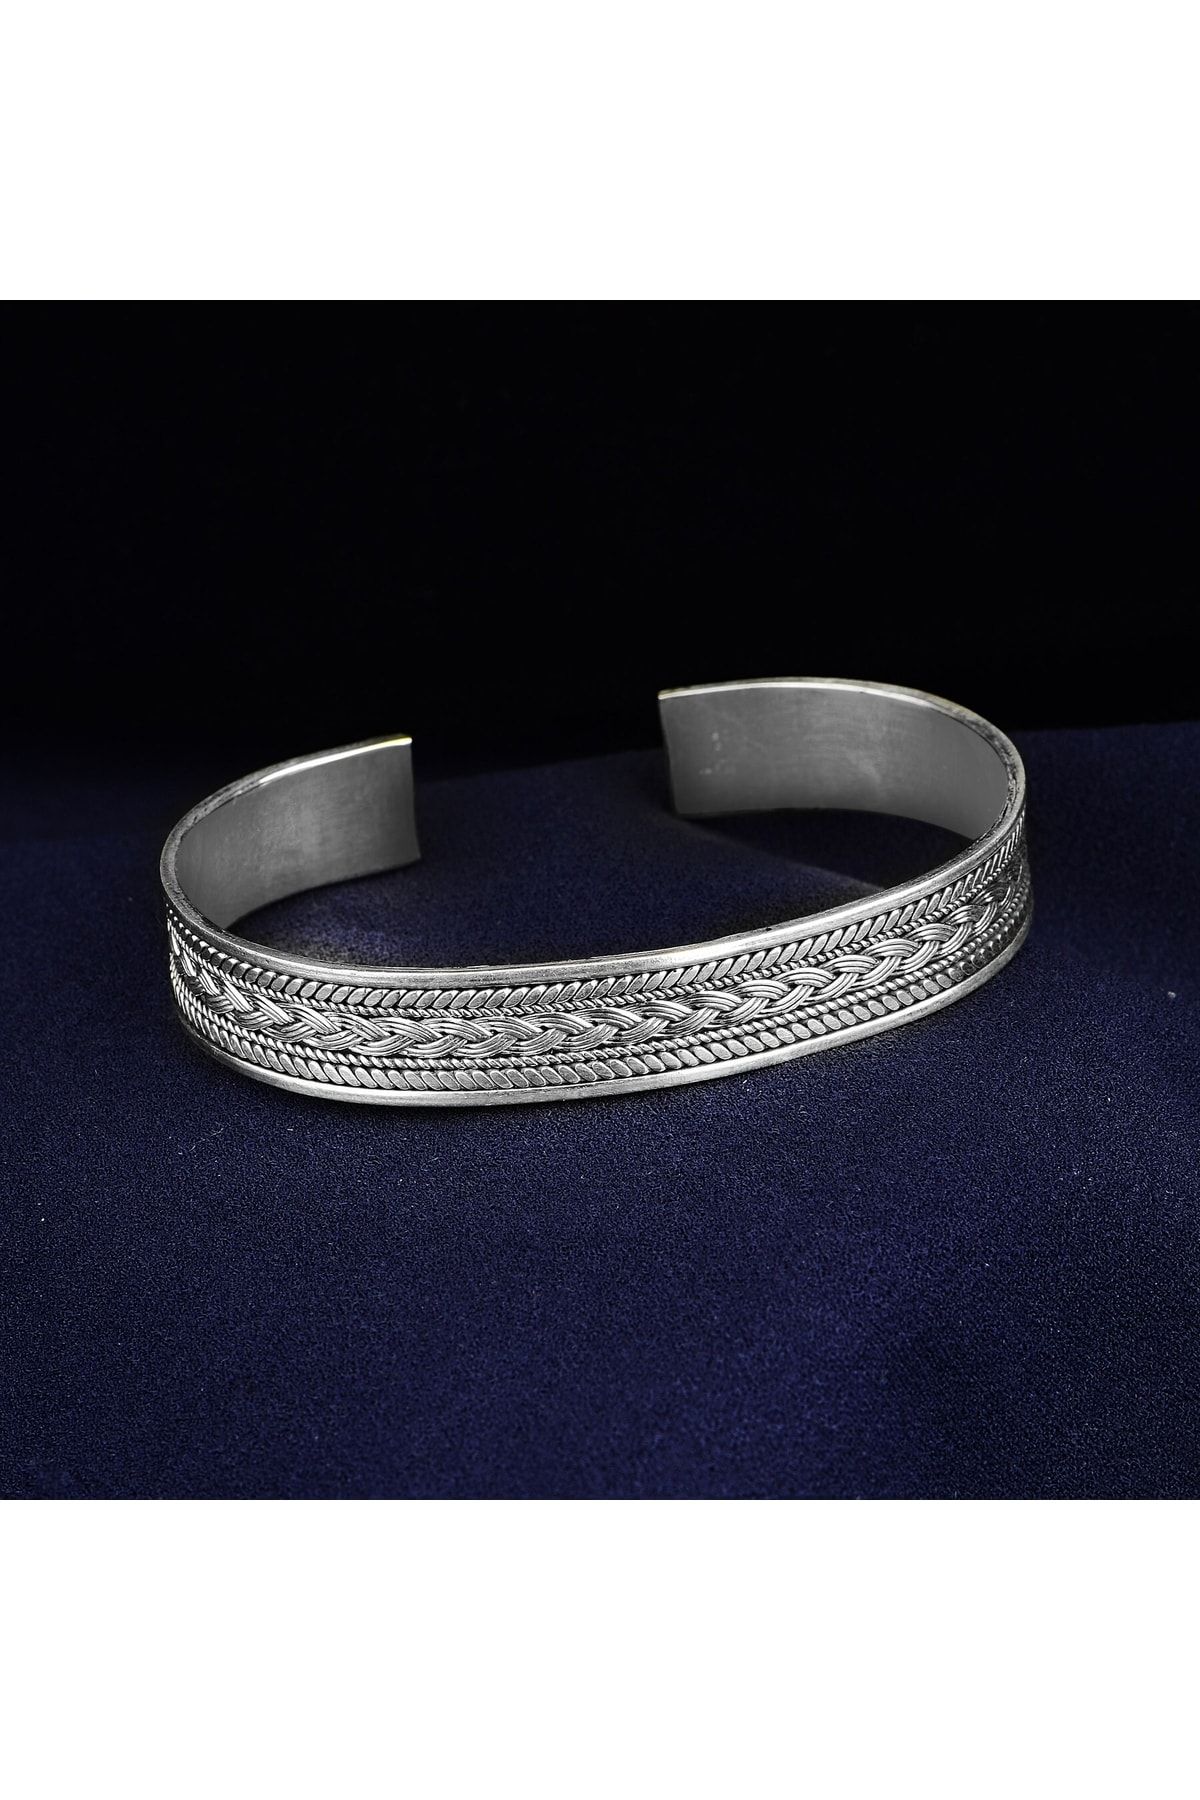 Mercan Silver Gümüş El Yapımı Örgü Modeli Bilezik